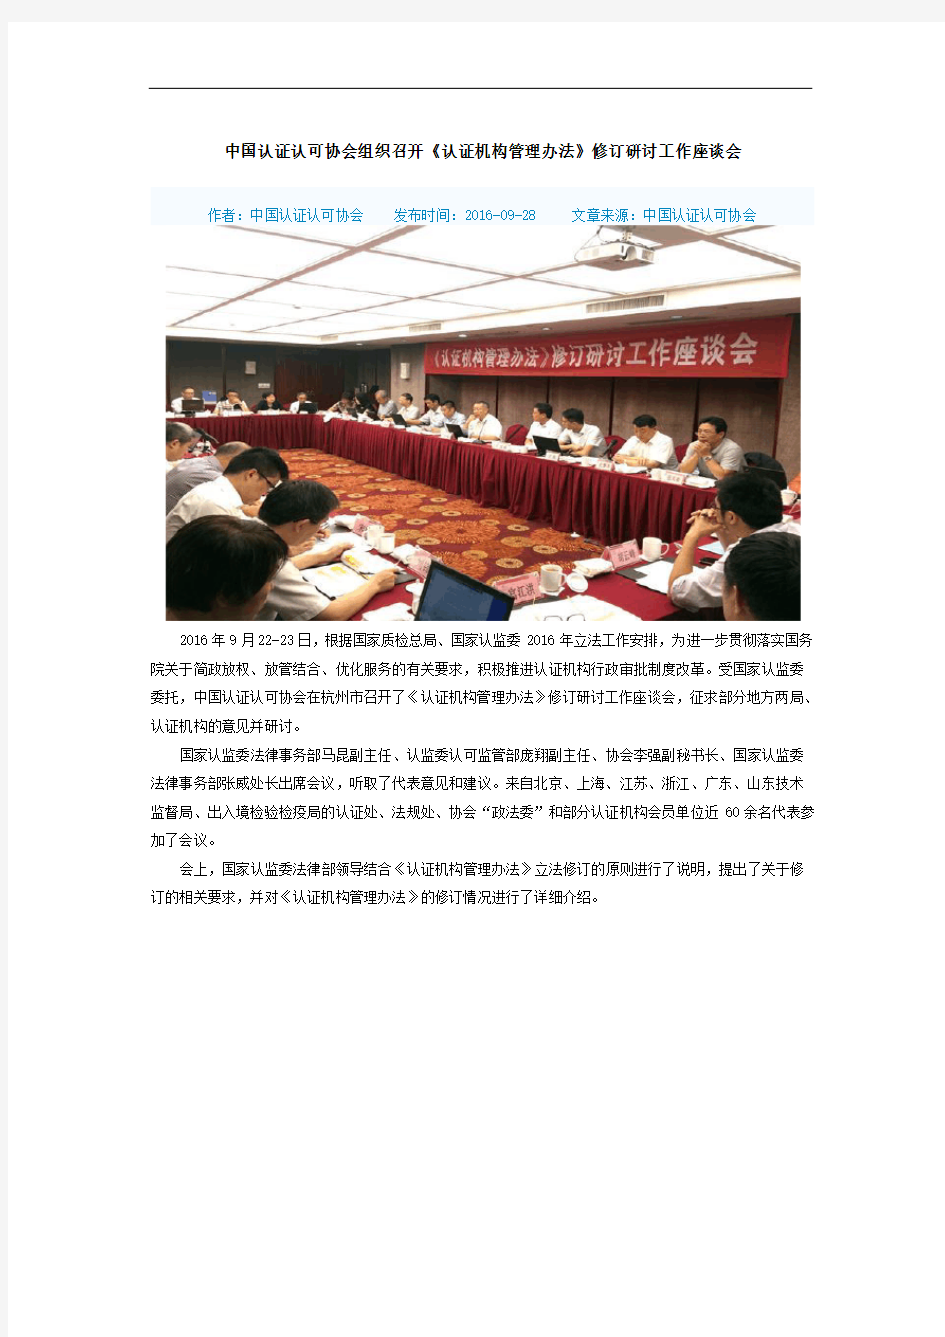 中国认证认可协会组织召开《认证机构管理办法》修订研讨工